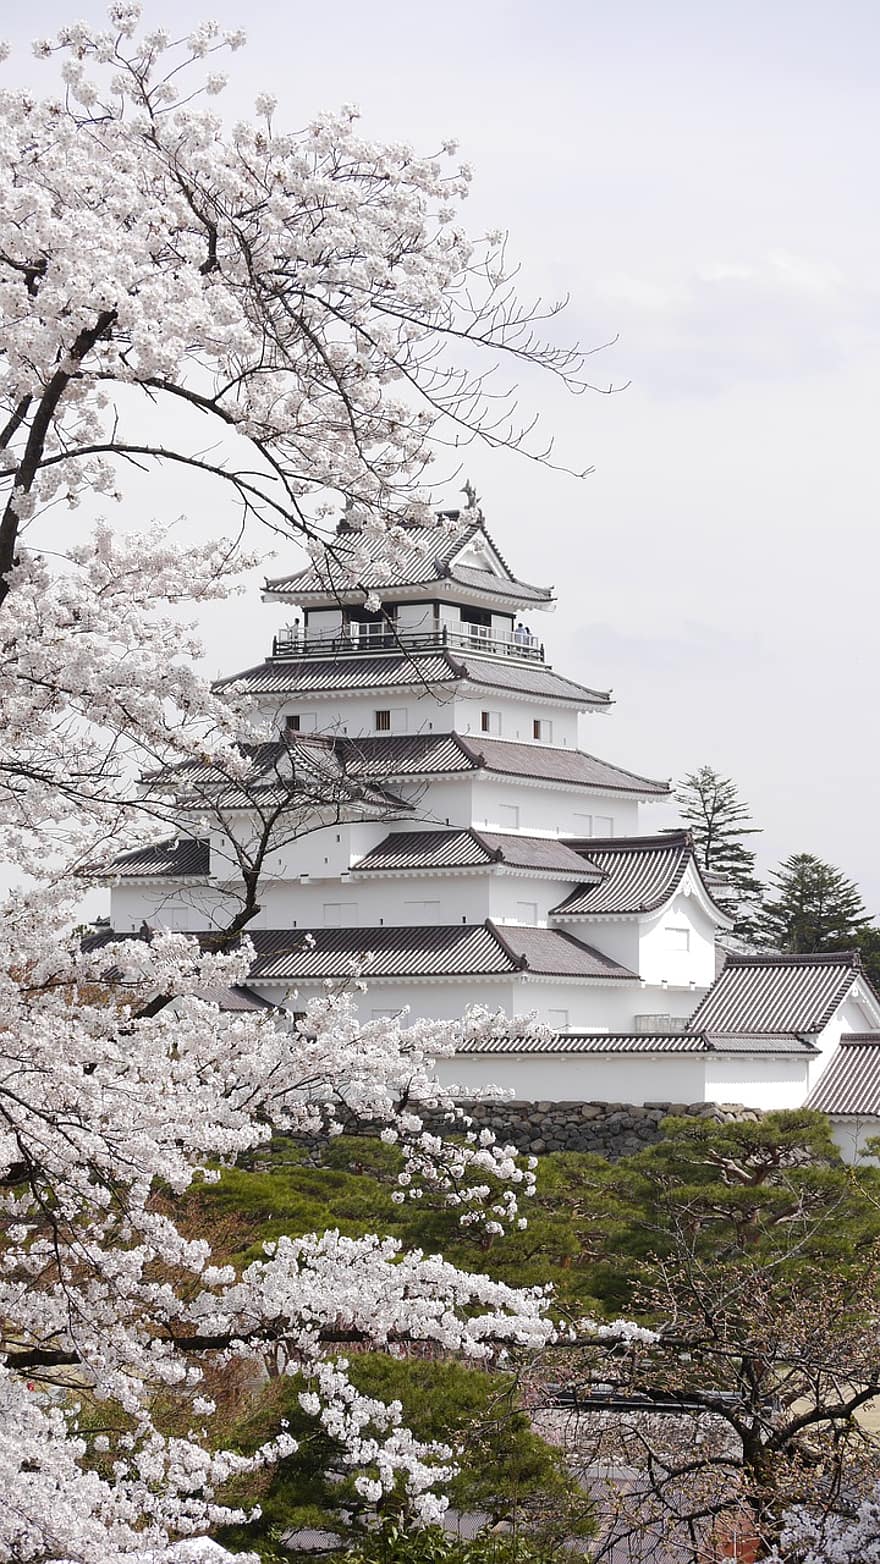 Nhật Bản, Hoa anh đào, mùa xuân, lâu đài tsuruga-jo, fukushima, aizu, Aizuwakamatsu, điểm đến du lịch, phong cảnh, điểm thu hút khách du lịch, xây dựng